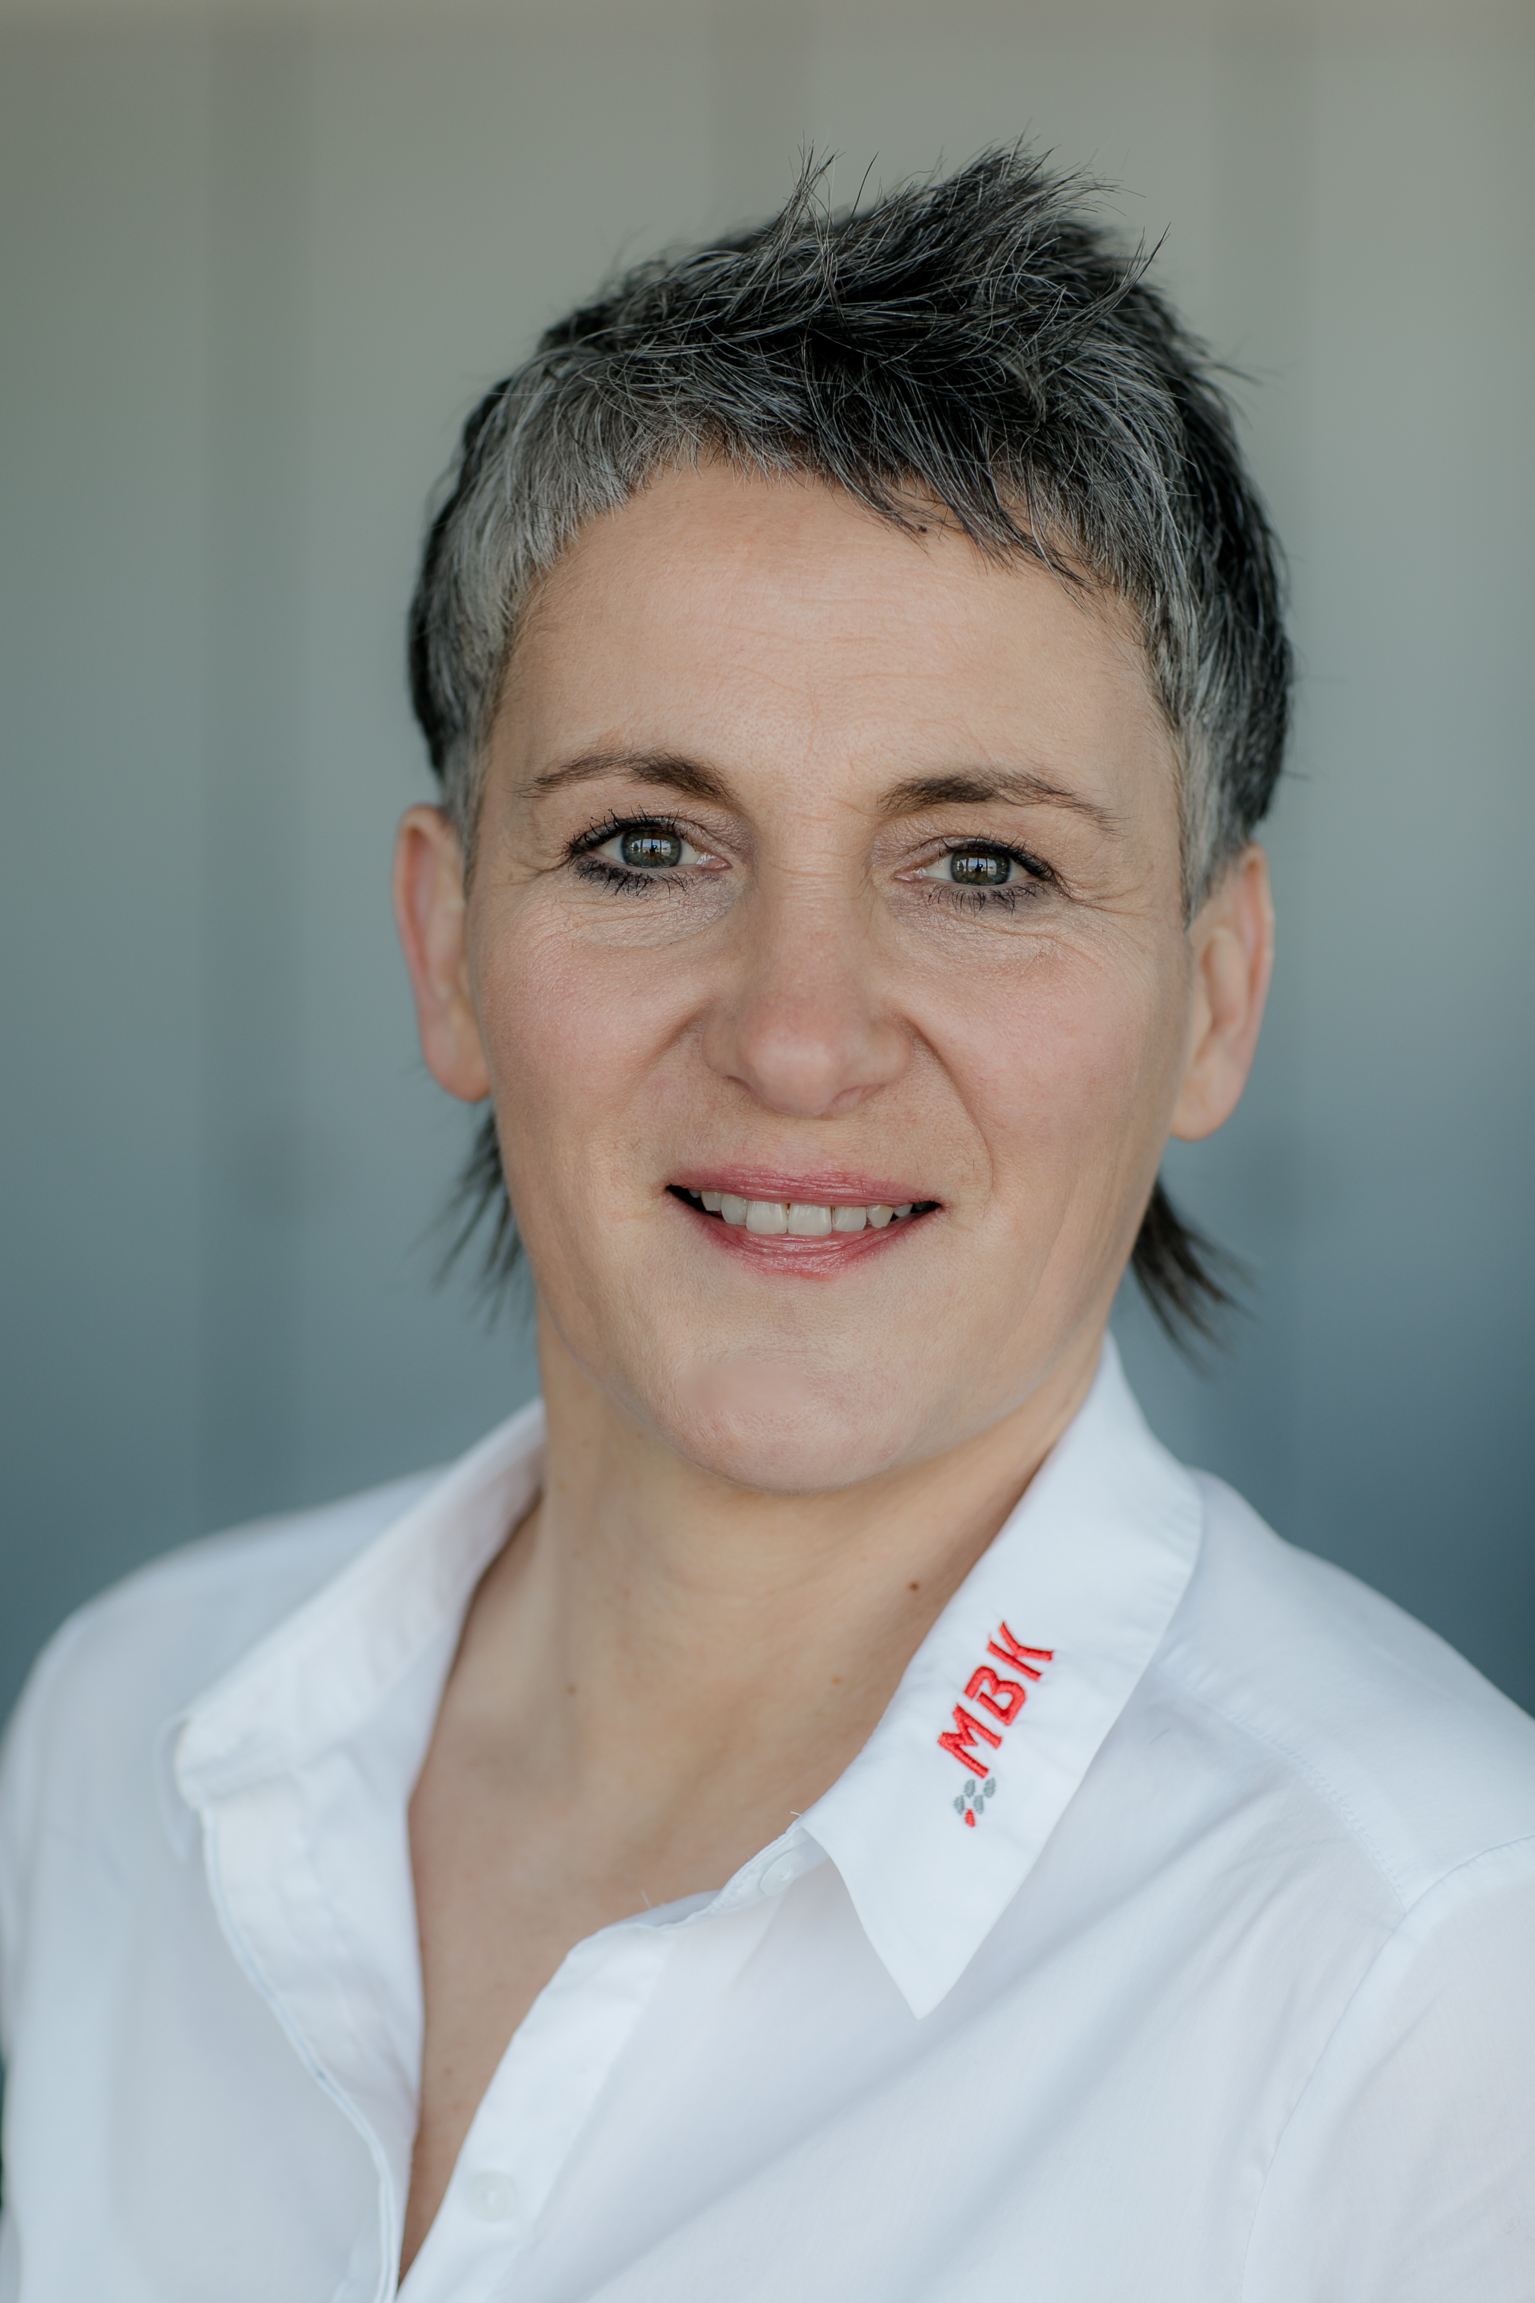 Silvia Kunz im Portrait. Sie trägt eine weiße Bluse mit mbk Logo in Rot auf dem Kragen.